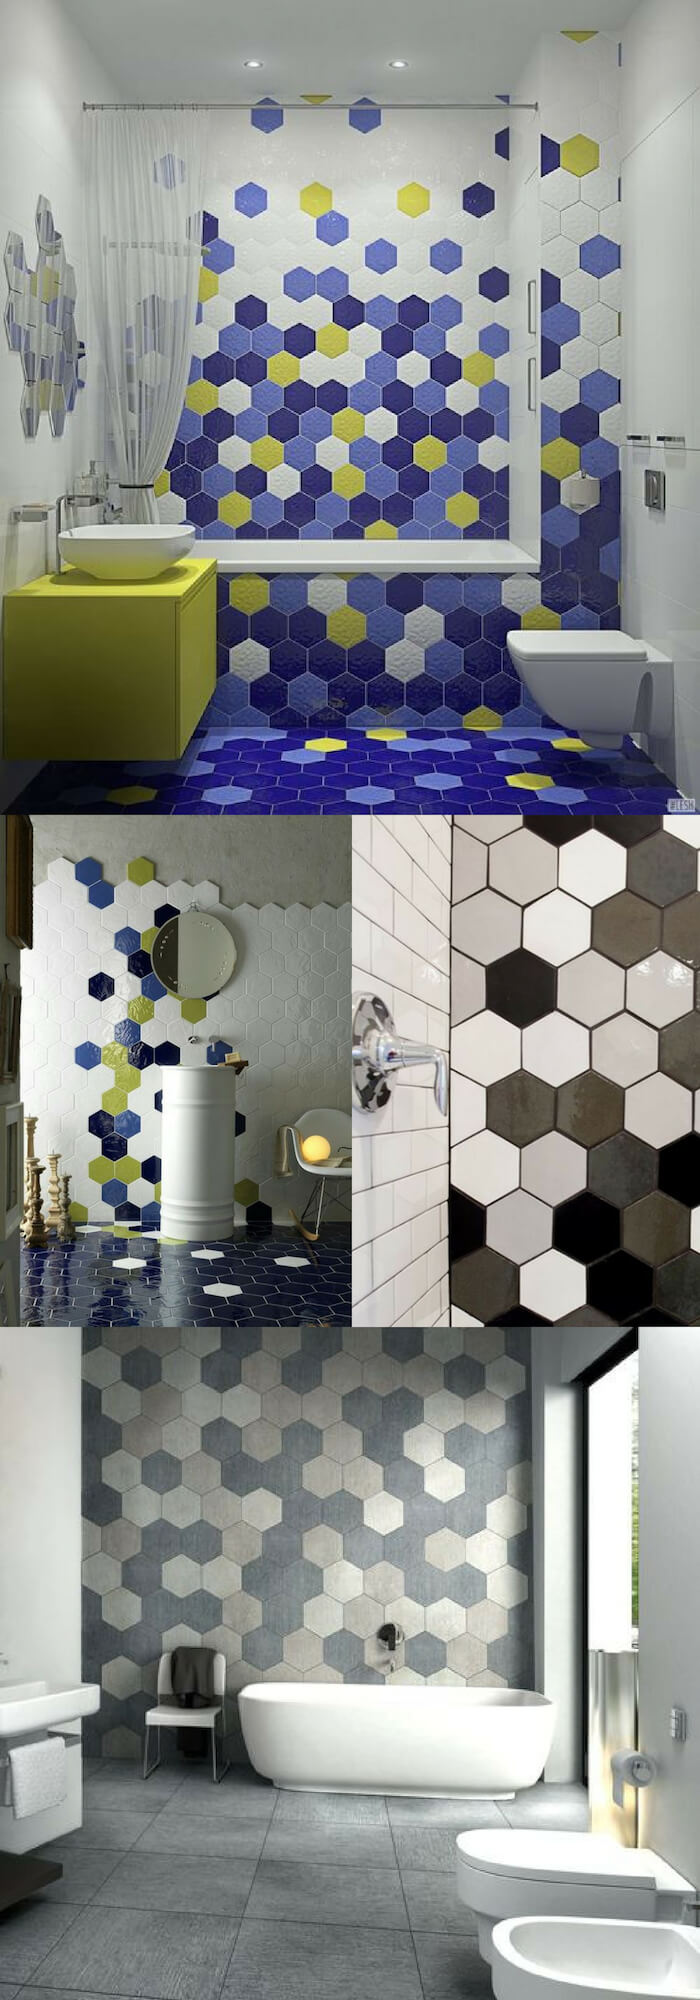 Hexagon wall | Unique Wall Tile Ideas for Bathroom Design